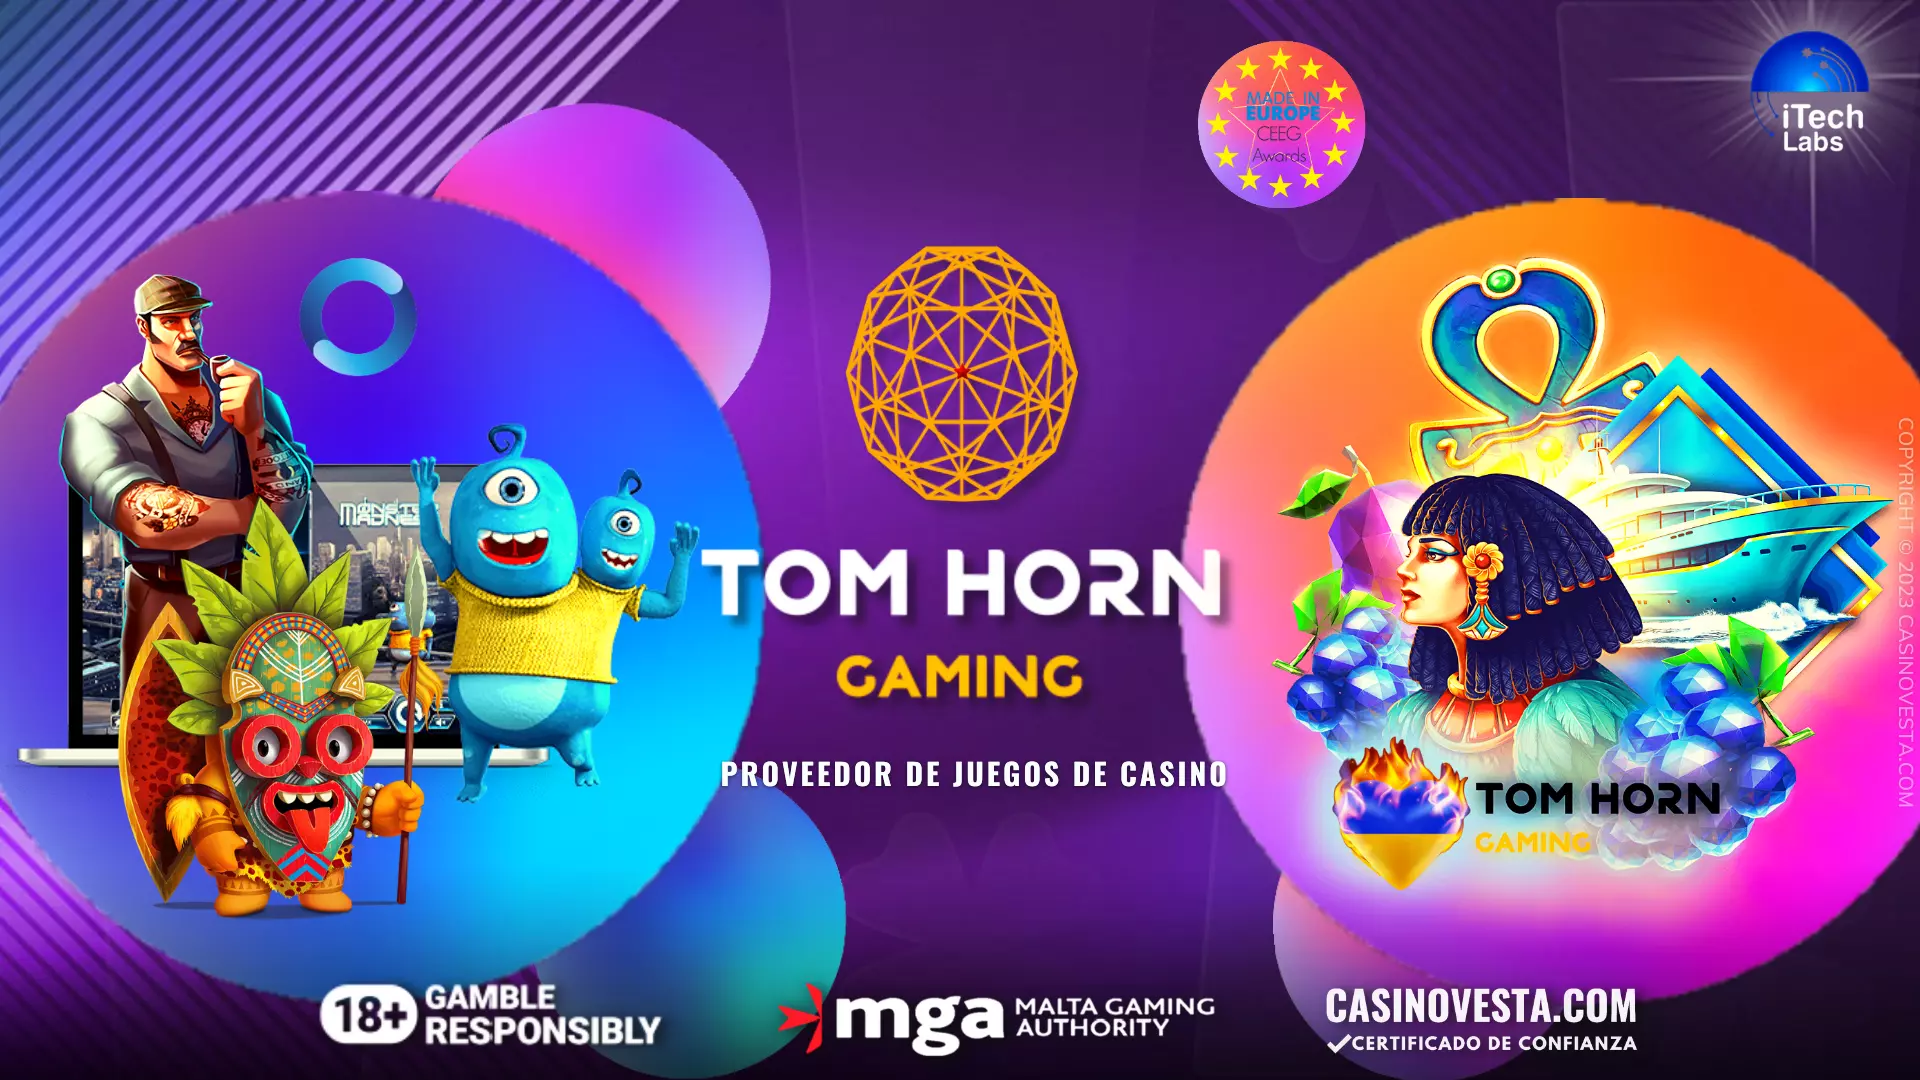 Reseña del proveedor de juegos de casino Tom Horn Gaming